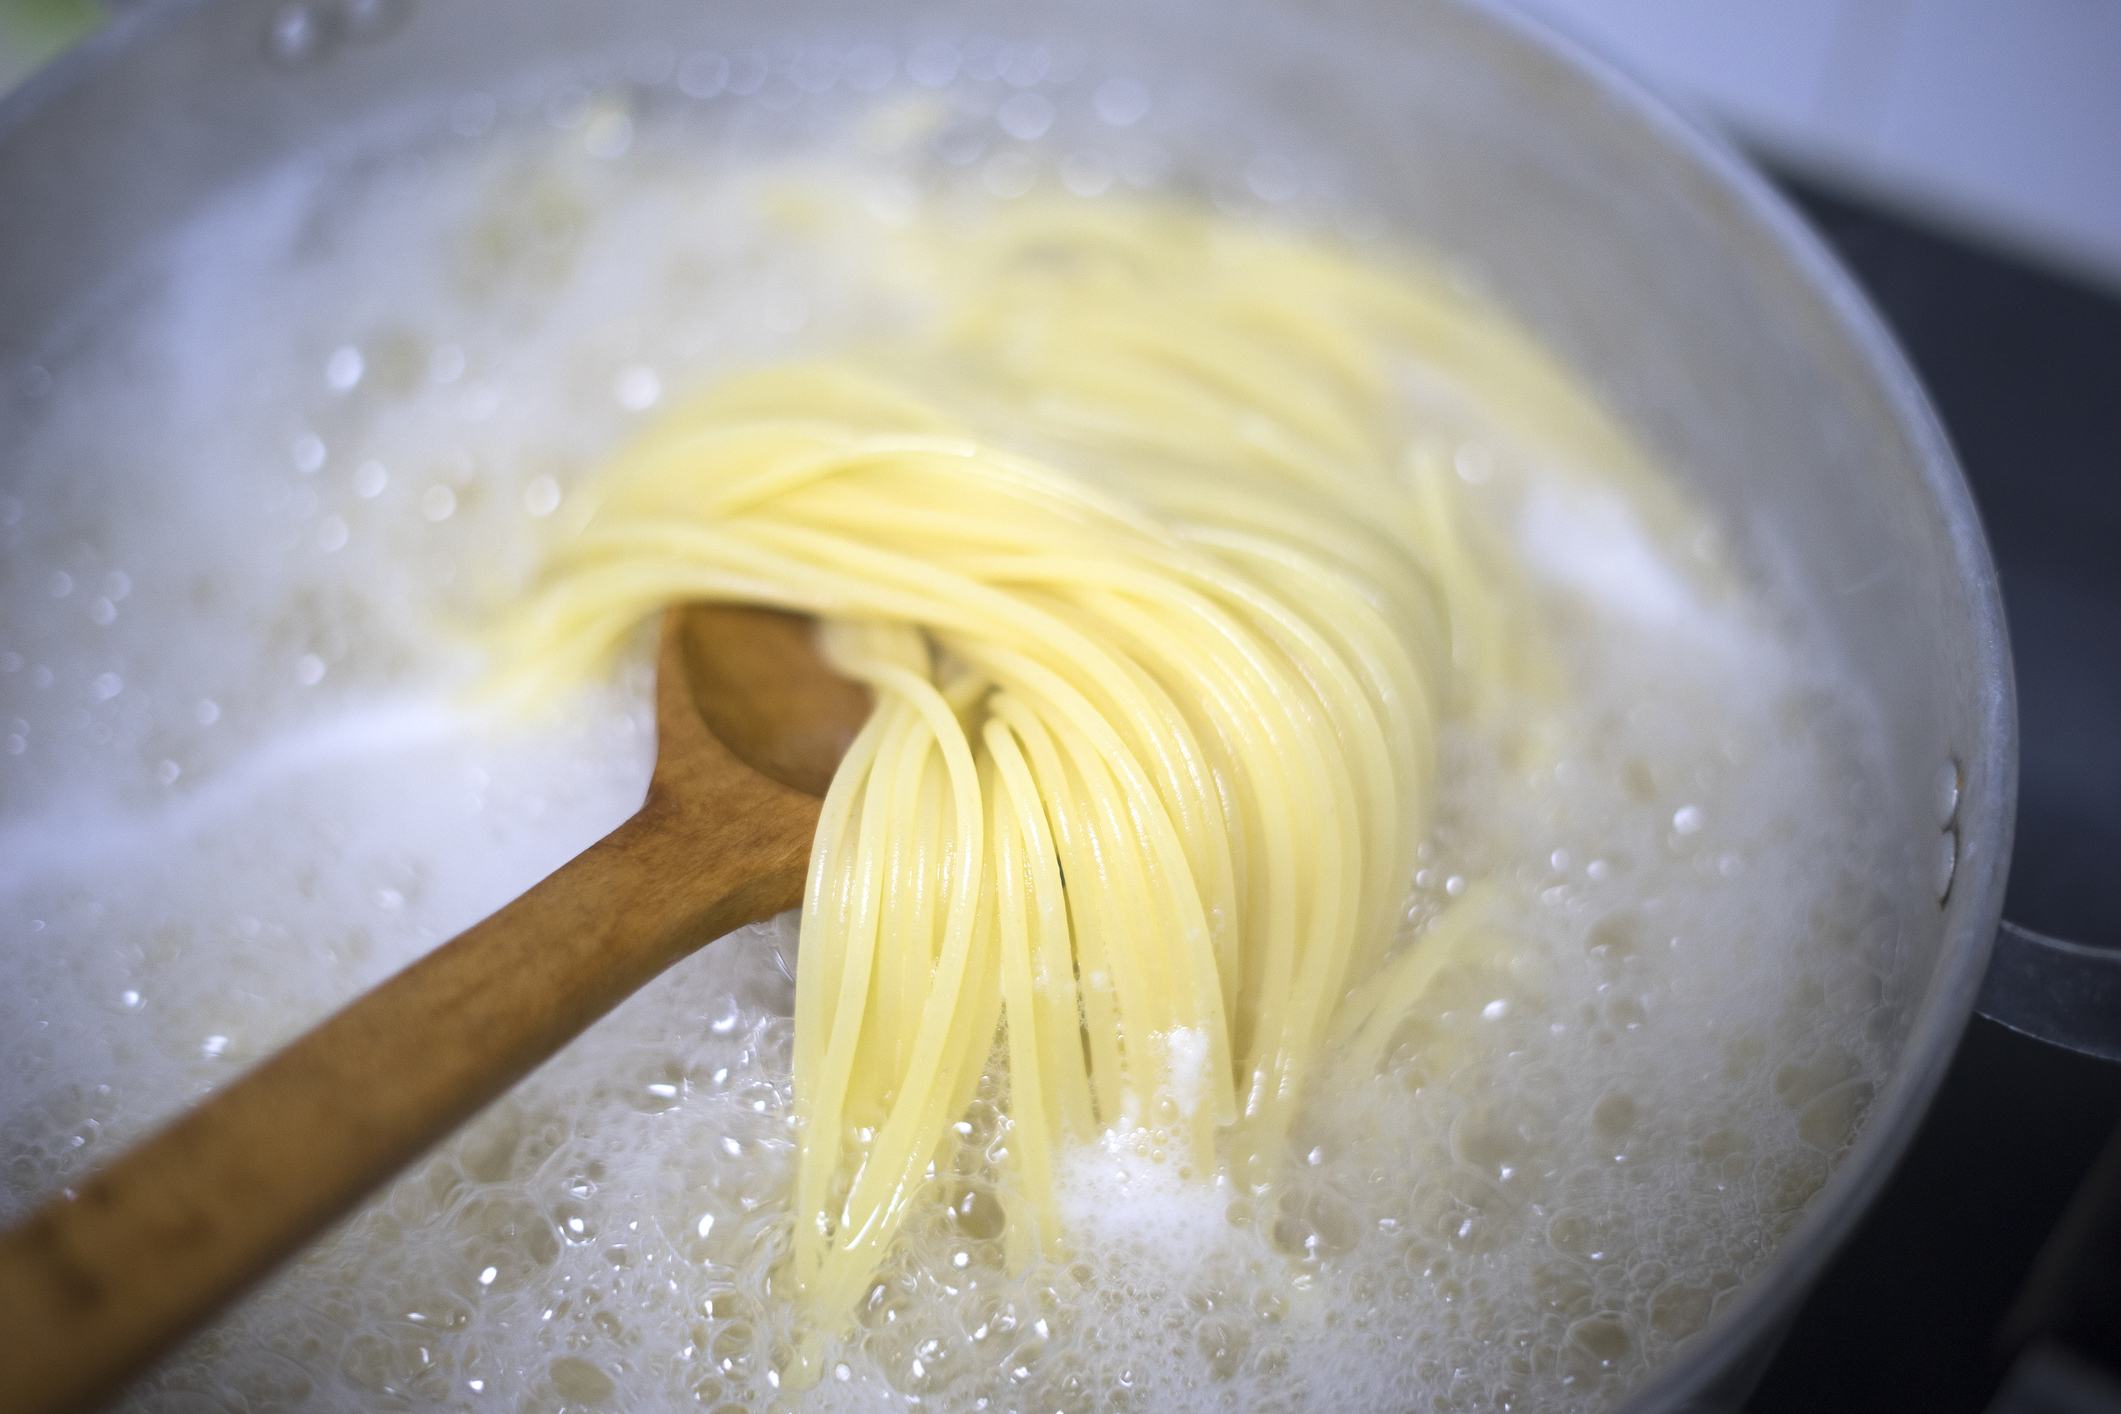 Elterjedtek a mítoszok a tészta főzéséről, de most megmutatjuk mi az  igazság - Blikk Rúzs